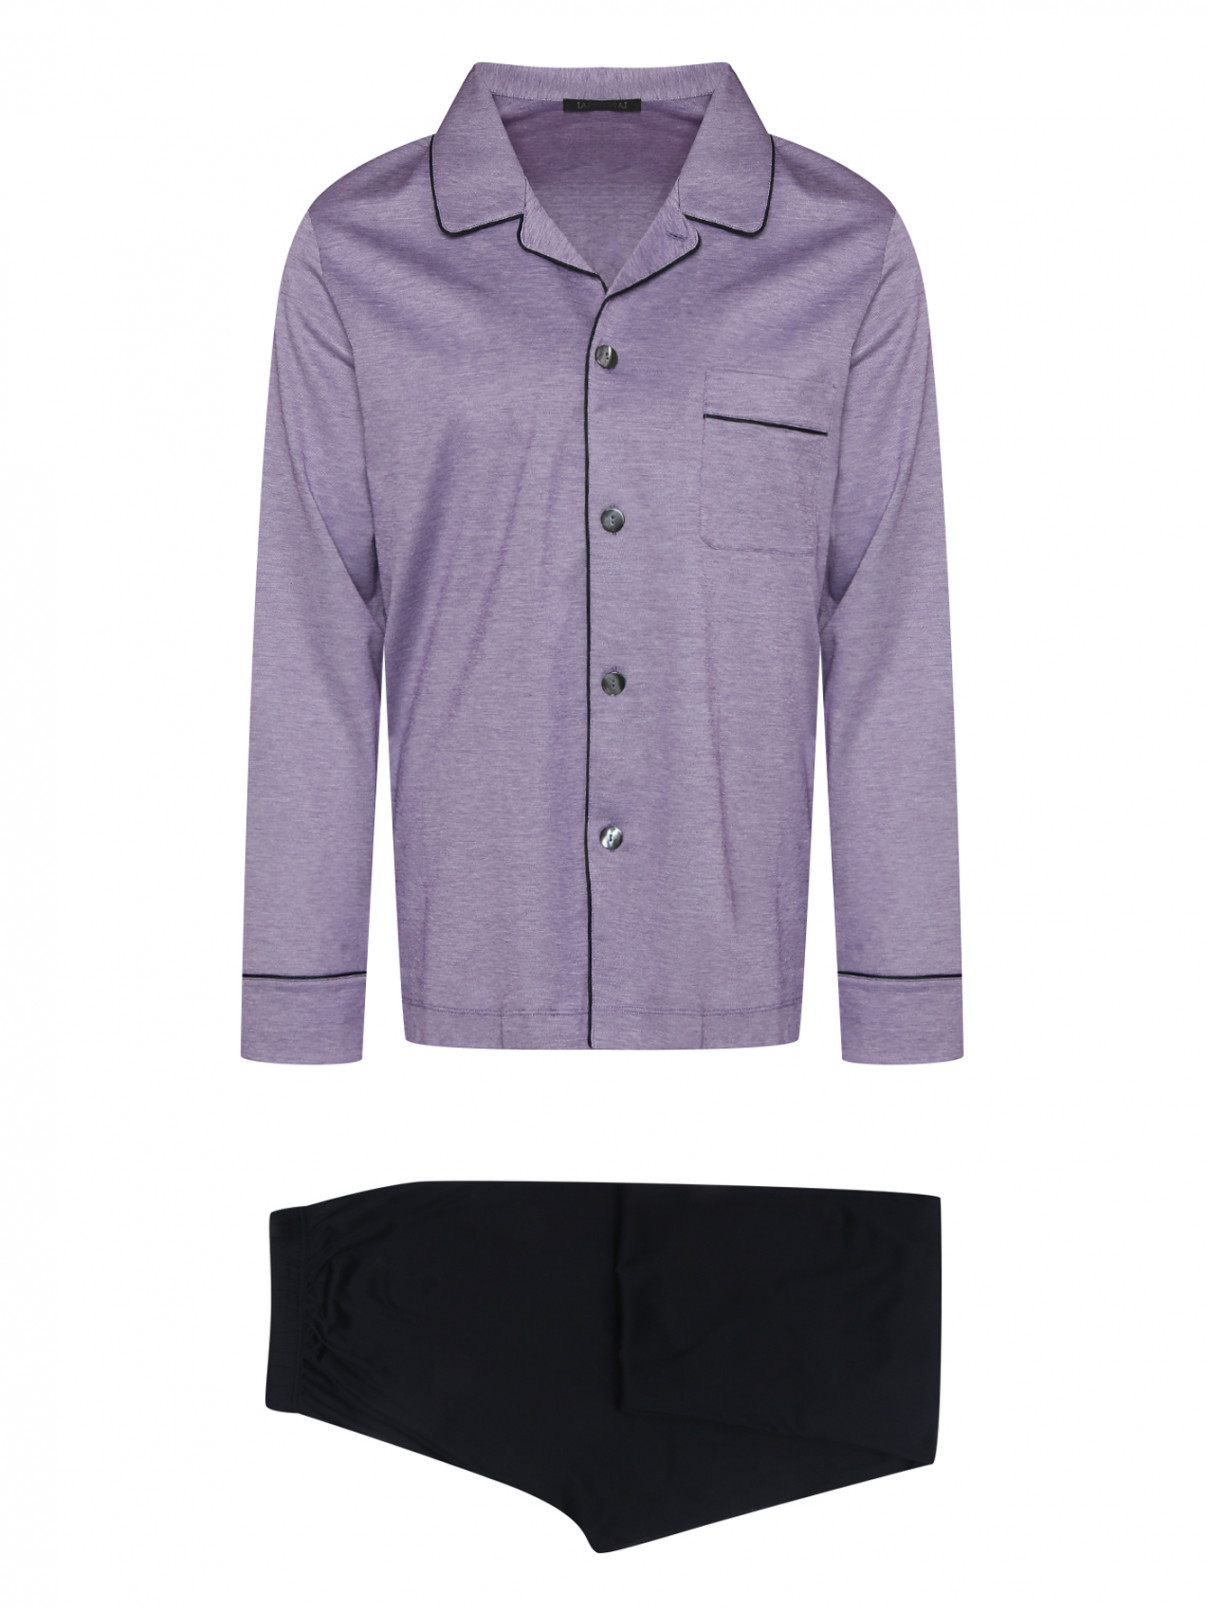 Пижама из хлопка с брюками Nero Perla  –  Общий вид  – Цвет:  Фиолетовый